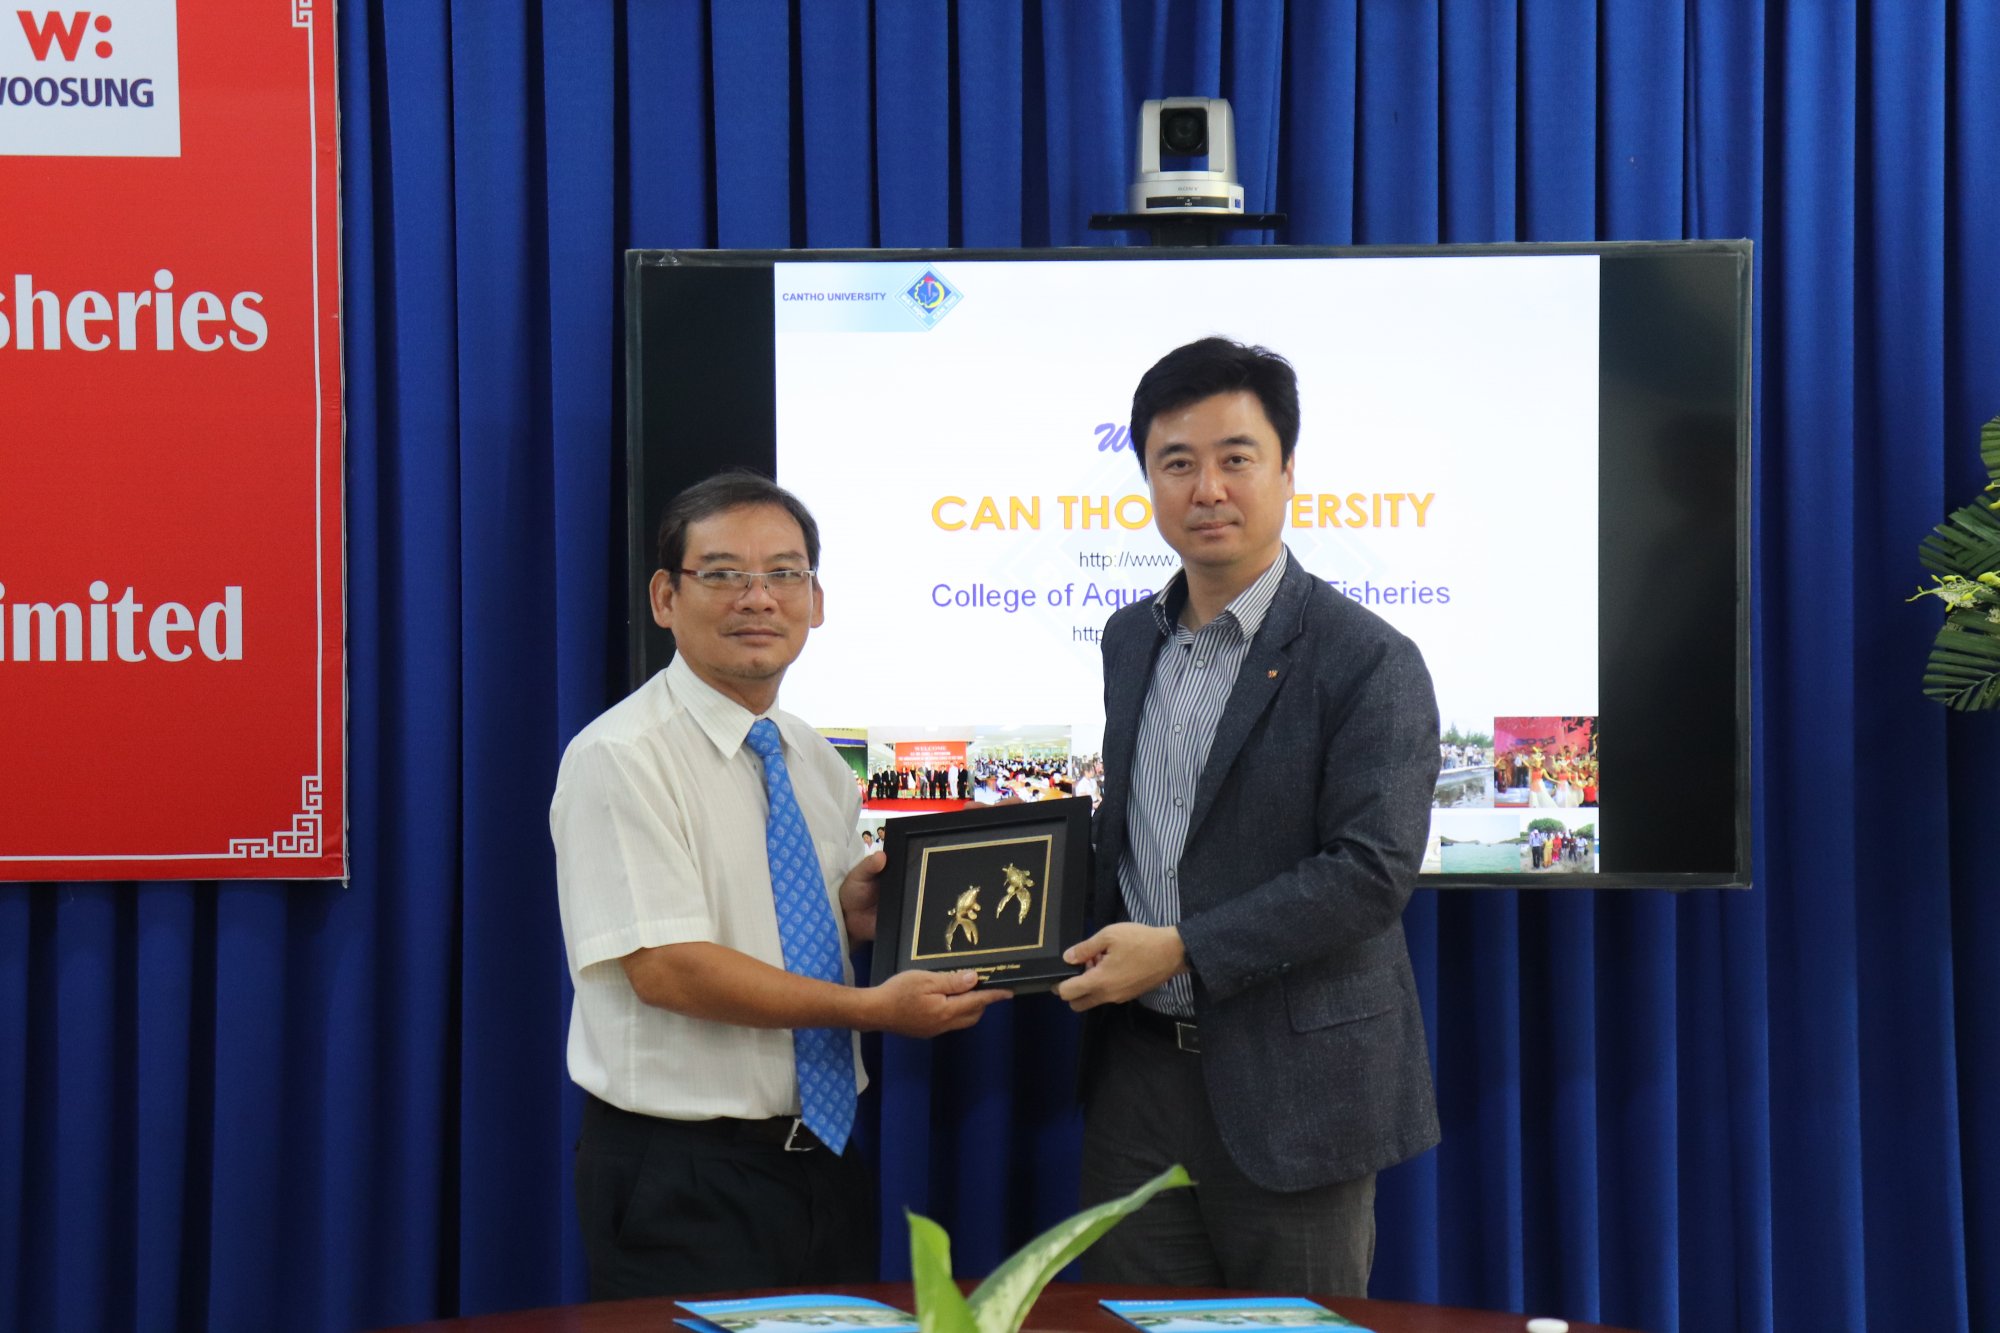 ông Lim Min Soo đại diện Woosung Việt Nam trao quà tặng lưu niệm cho Khoa Thủy Sản ĐH Cần Thơ